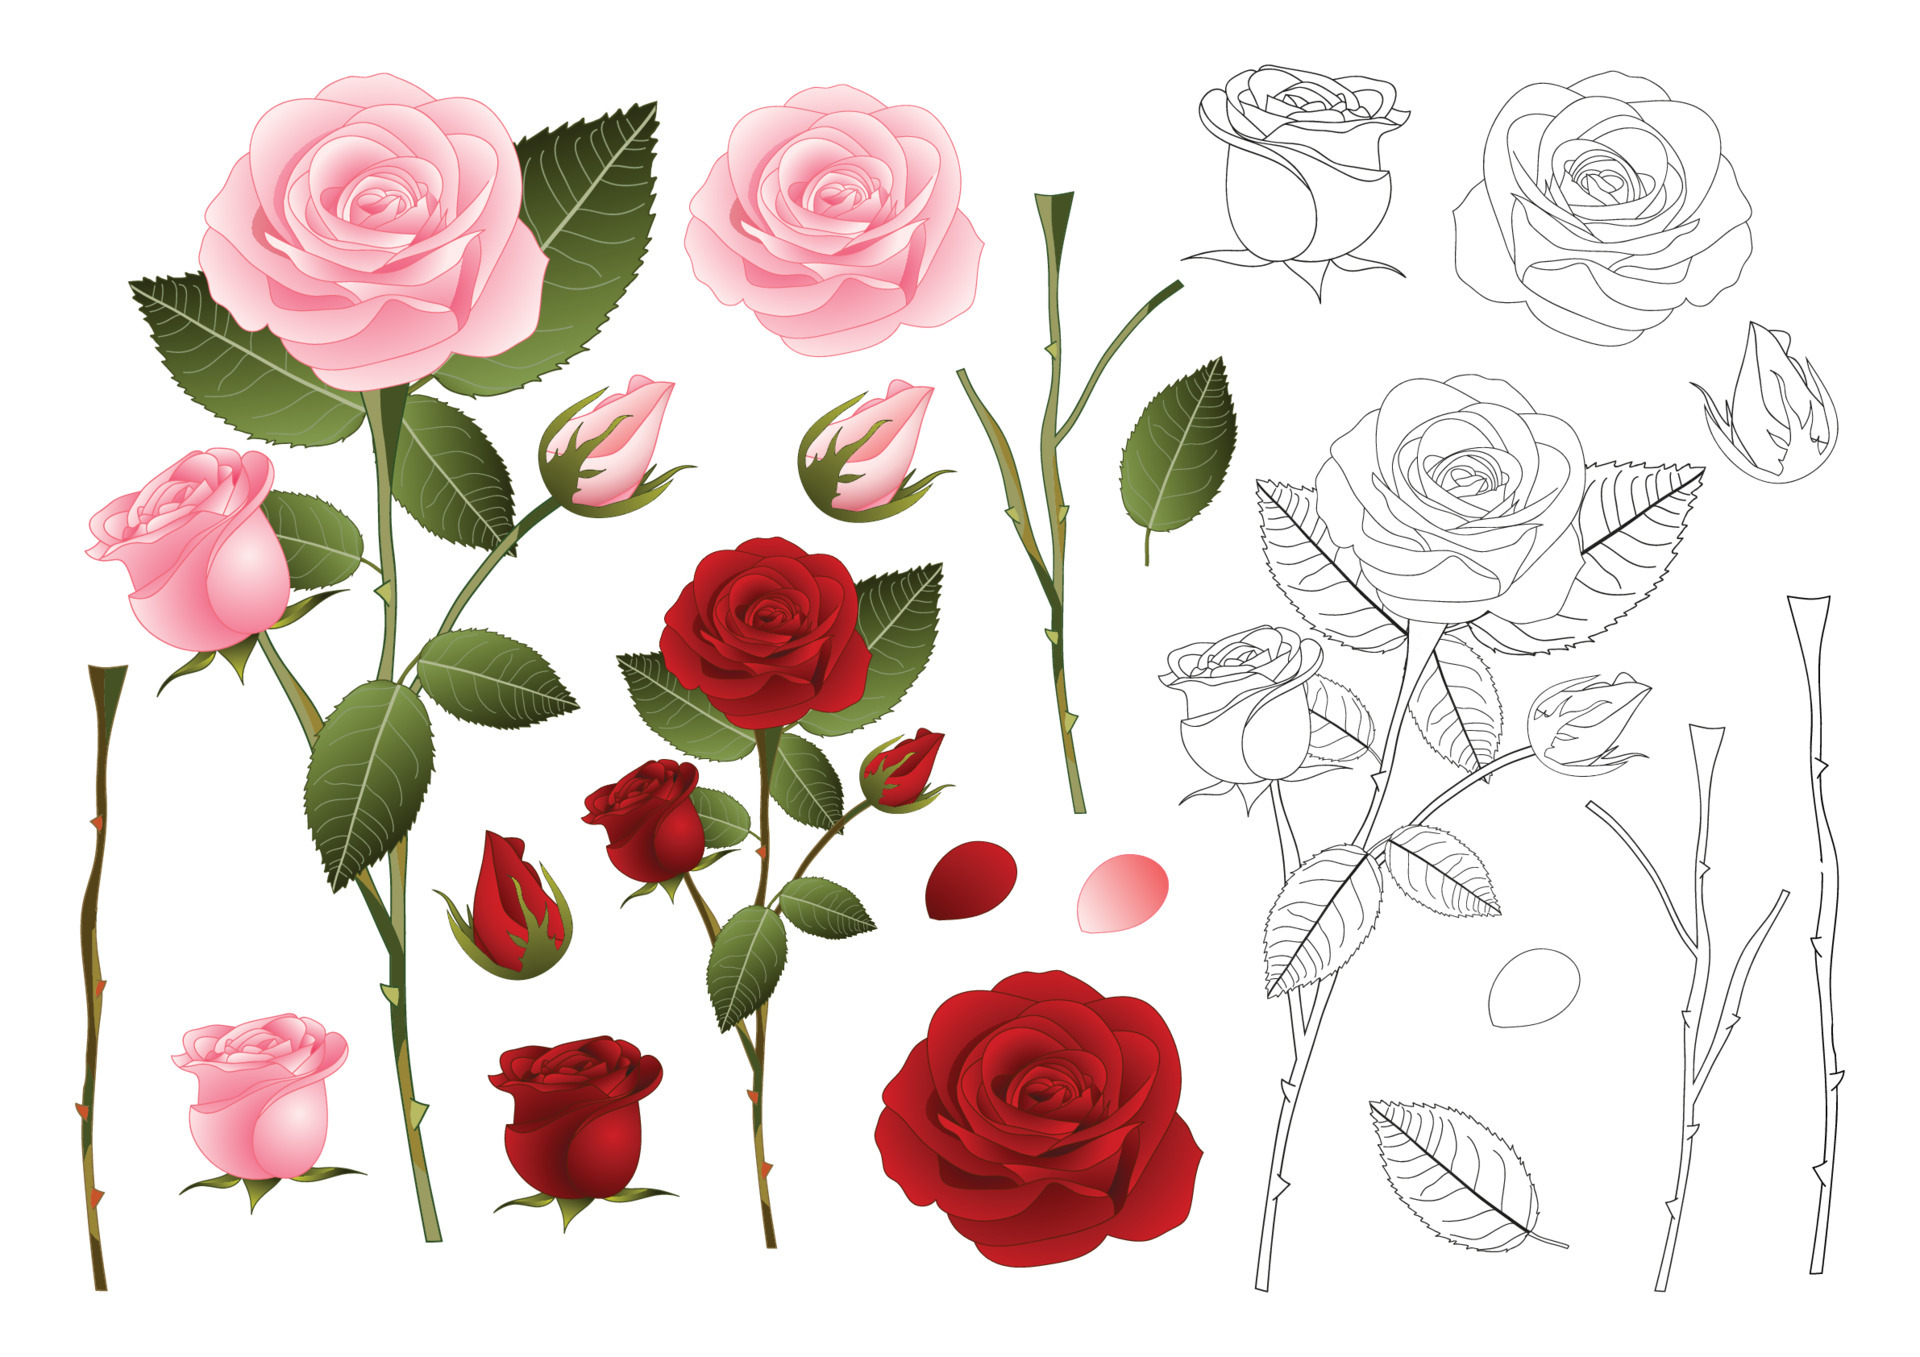 Đường viền hoa hồng đỏ hồng là một trong những chủ đề phổ biến trong nghệ thuật vẽ tranh. Tạo ra chiếc khung cho hoa hồng của bạn với đường viền rực rỡ này sẽ làm cho tranh của bạn nổi bật và đẹp hơn. Hãy xem hình ảnh liên quan để có thêm ý tưởng và truyền cảm hứng cho dự án của bạn.